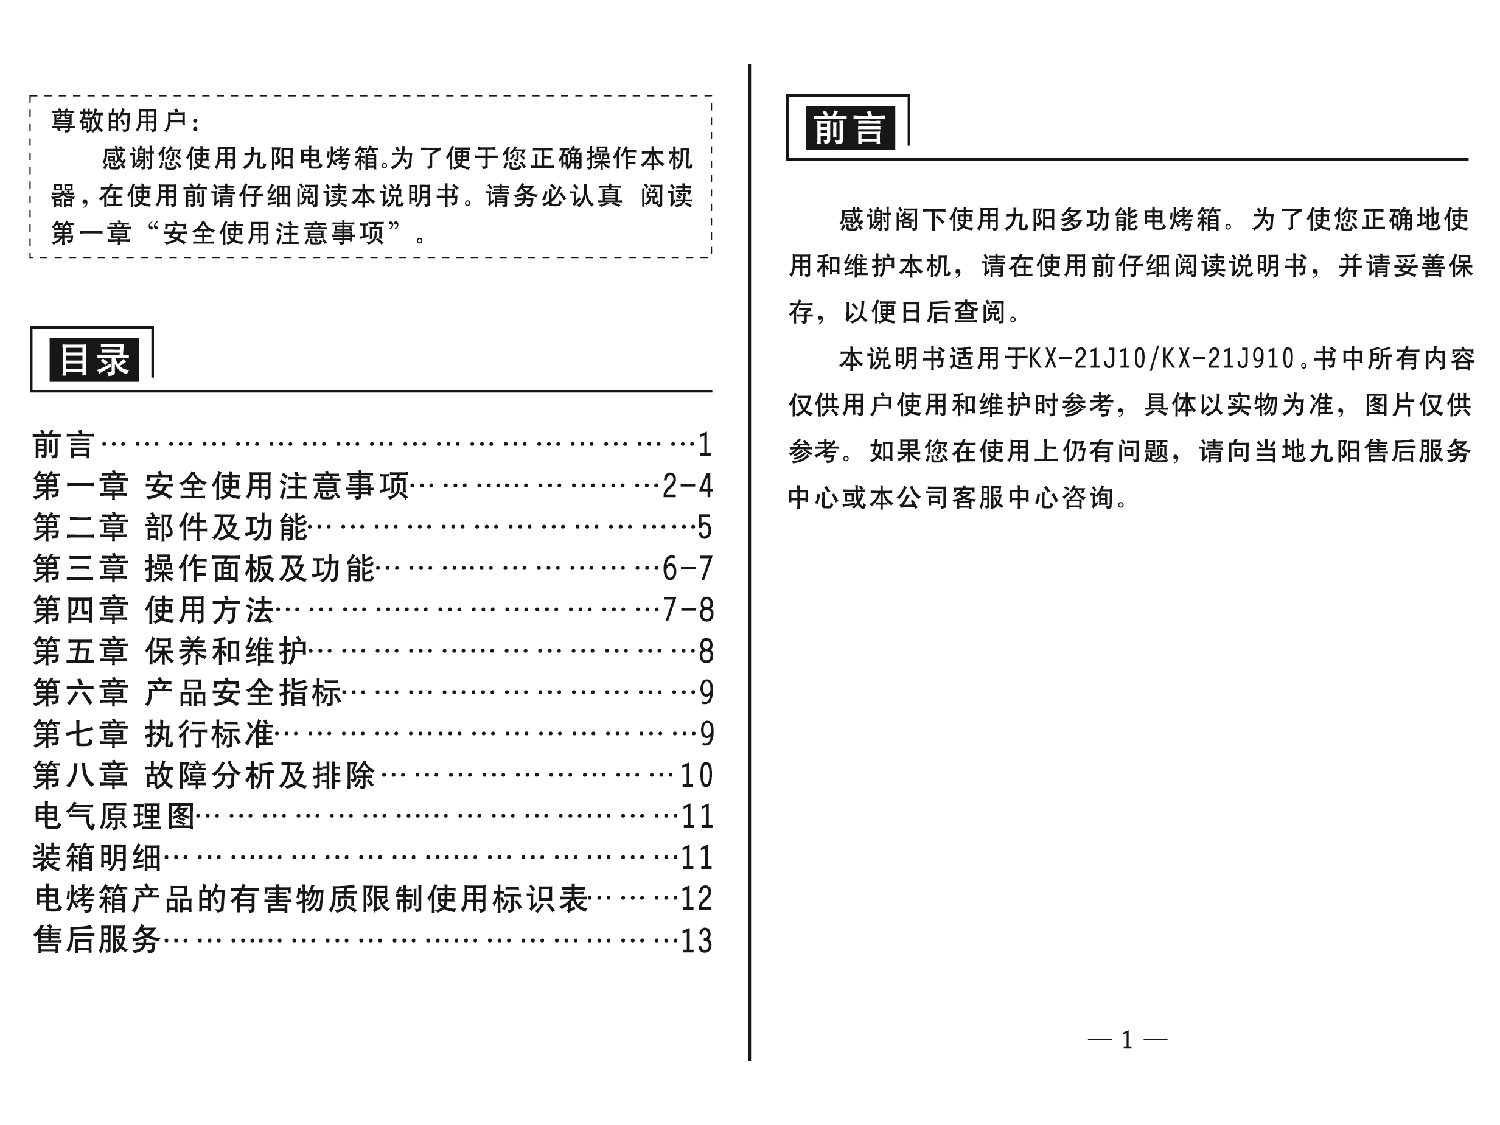 九阳 Joyyoung KX-21J10 使用说明书 第1页